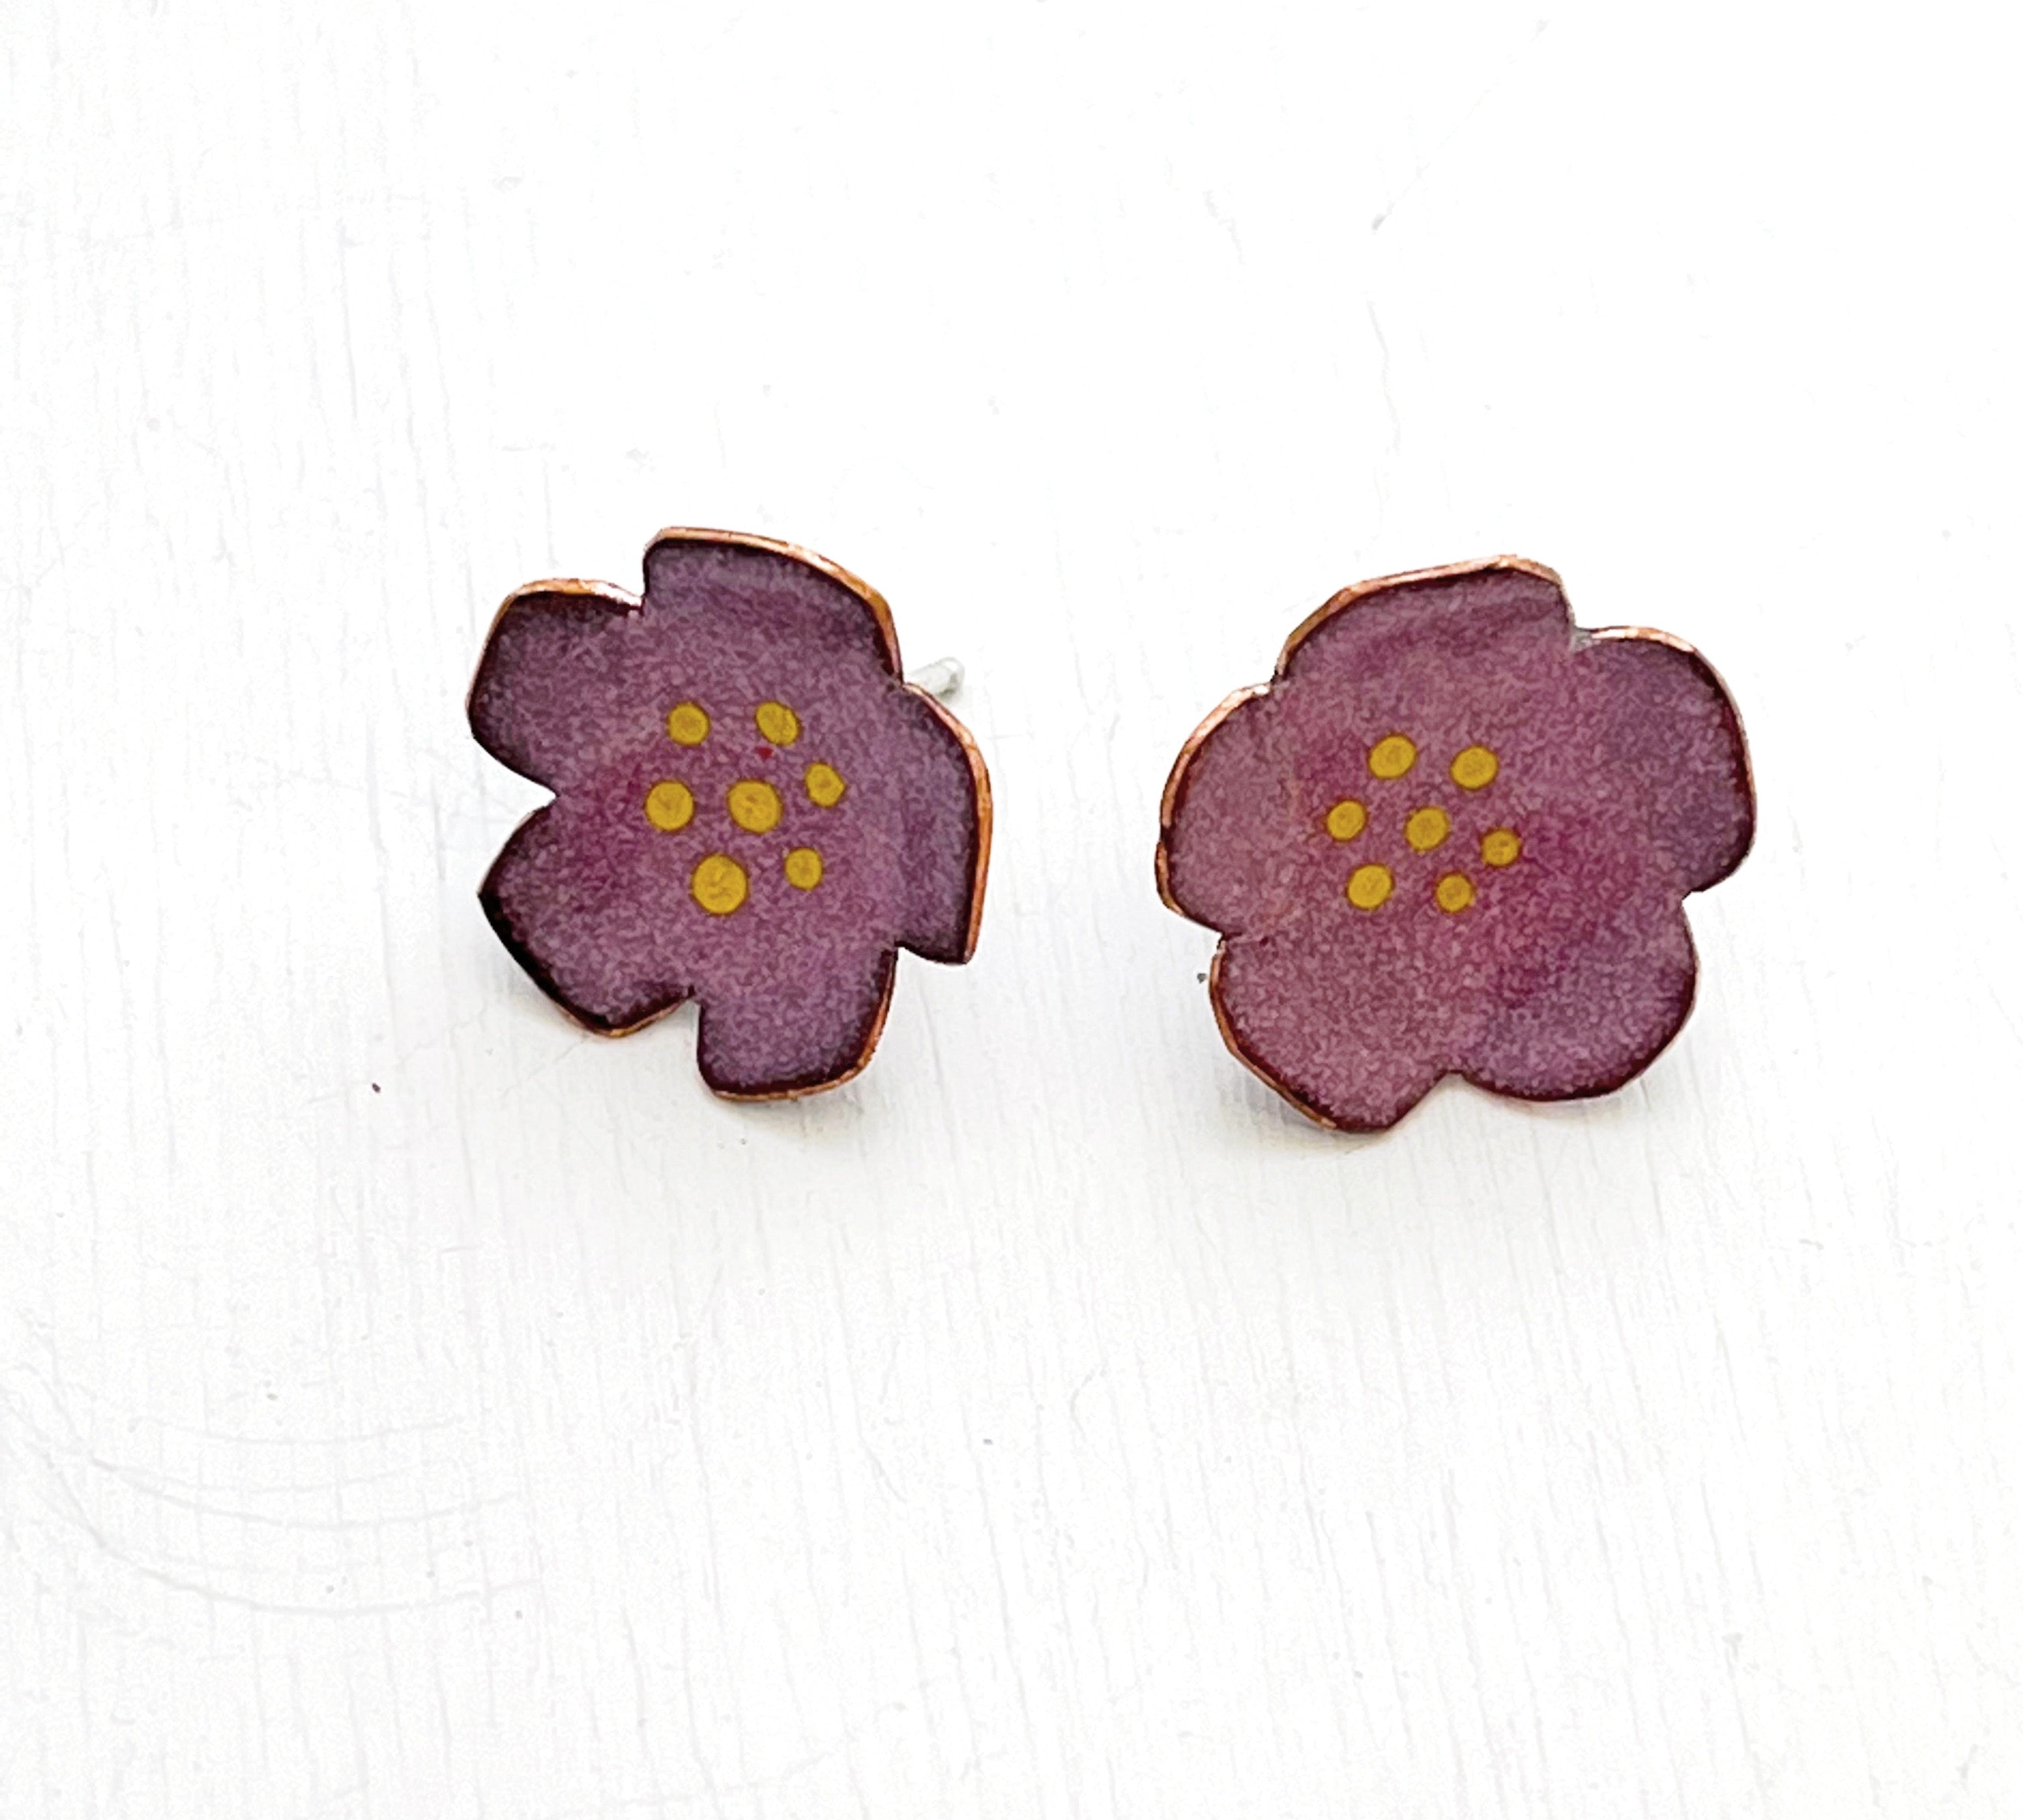 Little Flower Earrings